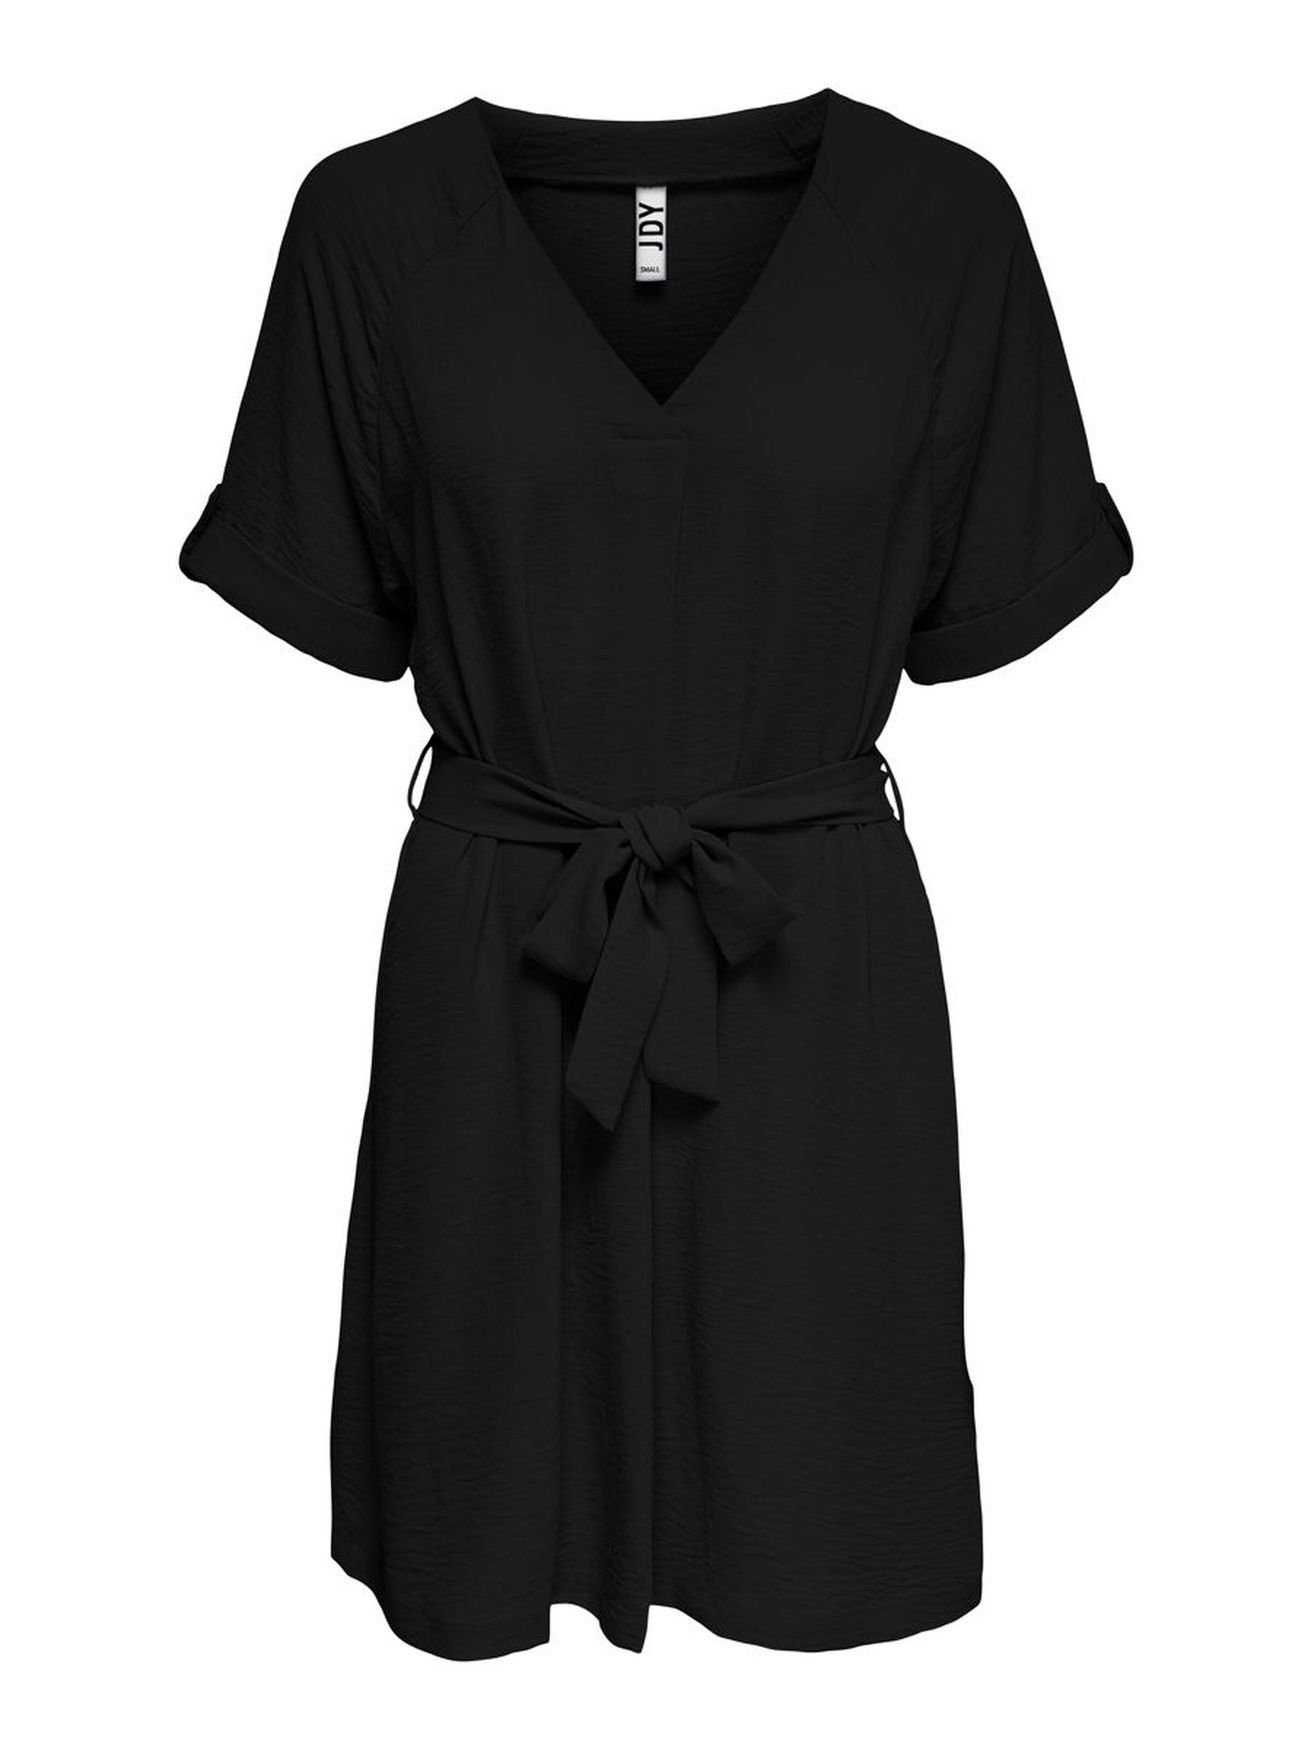 Blusen Shirtkleid JACQUELINE YONG Lockeres Kurzarm Schwarz Kleid in JDYDIVYA (lang) 4154 de